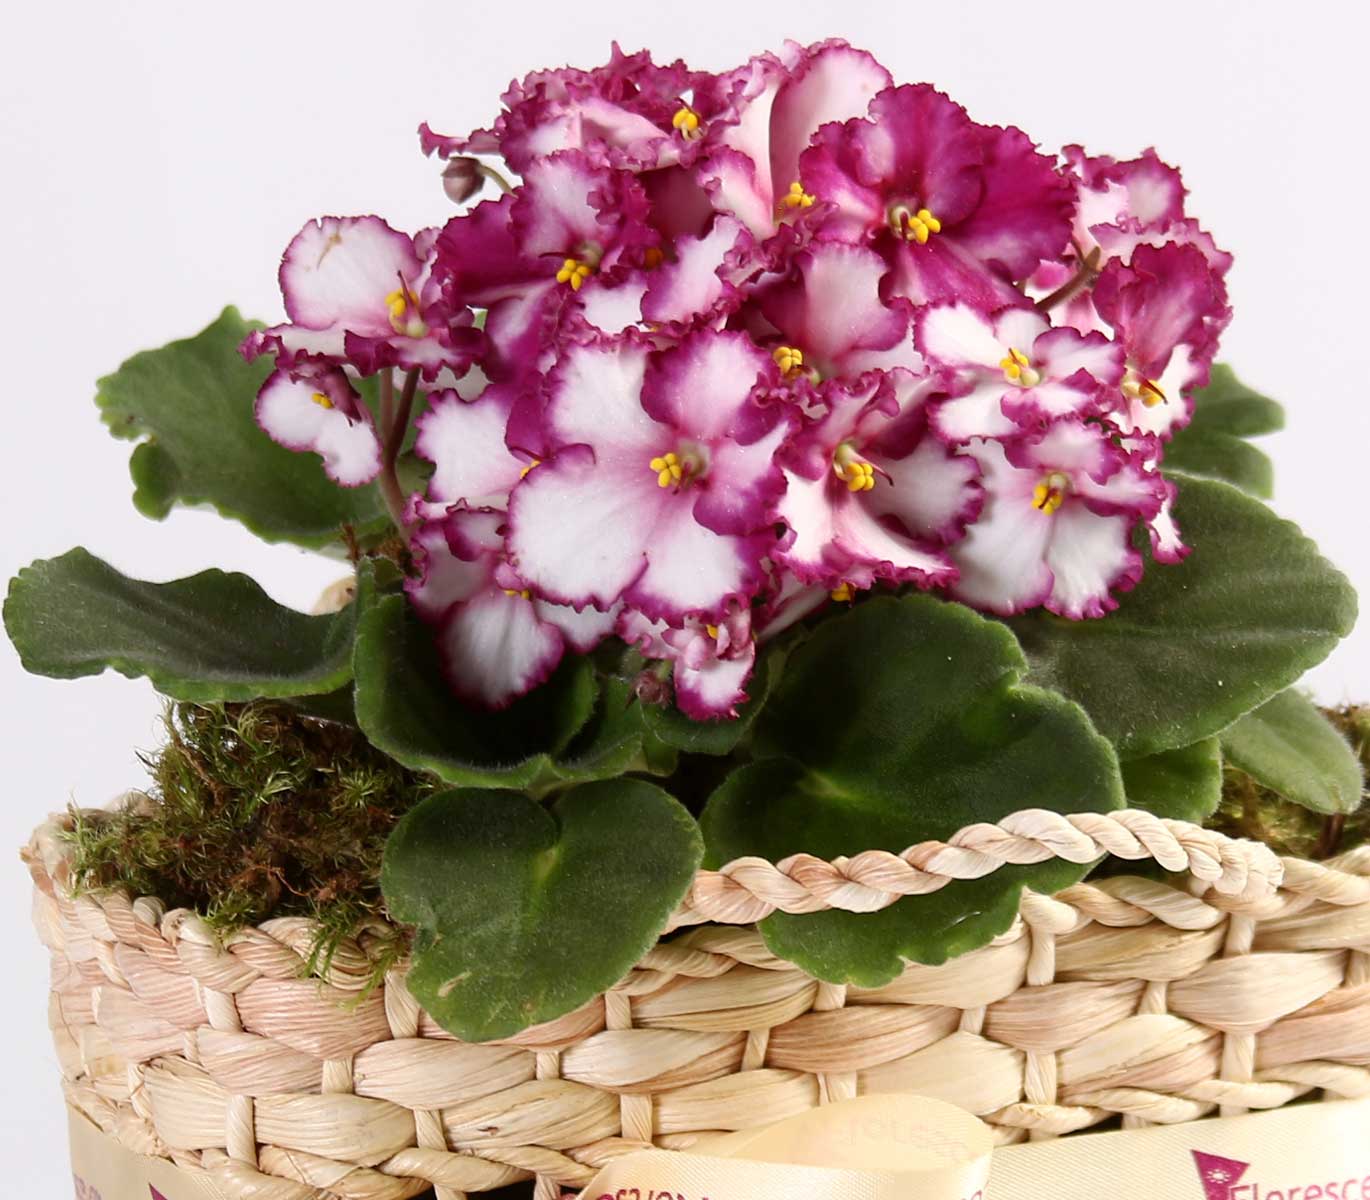 Bolsa Prime de Violetas - Presente de Aniversário | Floresce